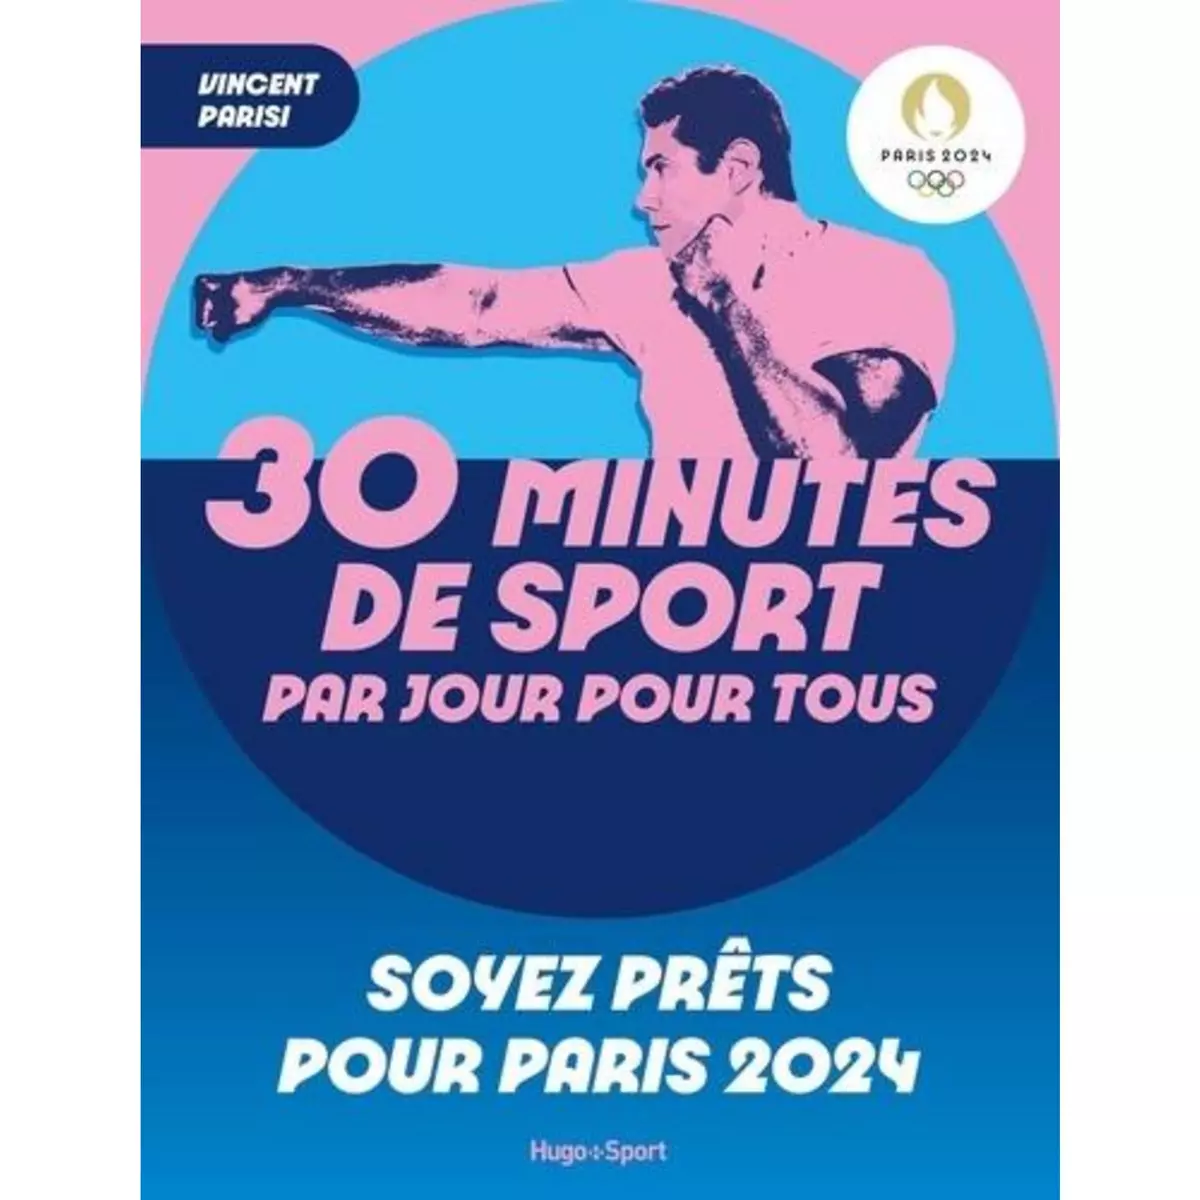  30 MINUTES DE SPORT PAR JOUR POUR TOUS. SOYEZ PRETS POUR PARIS 2024, Parisi Vincent